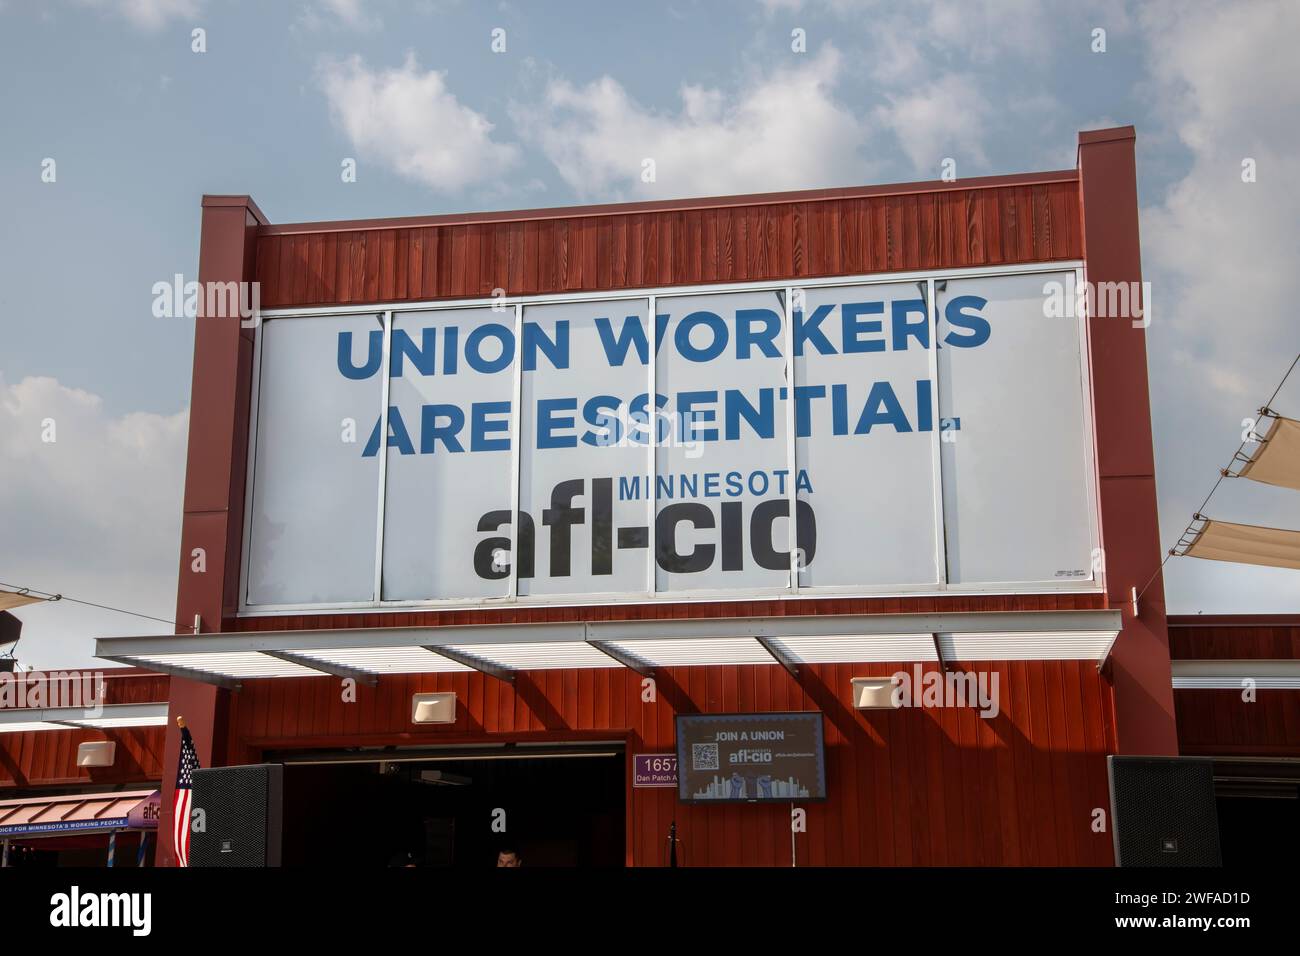 Falcon Heights, Minnesota. Il logo AFL-CIO sull'edificio alla fiera dello stato del Minnesota afferma che i lavoratori sindacali sono essenziali. Foto Stock